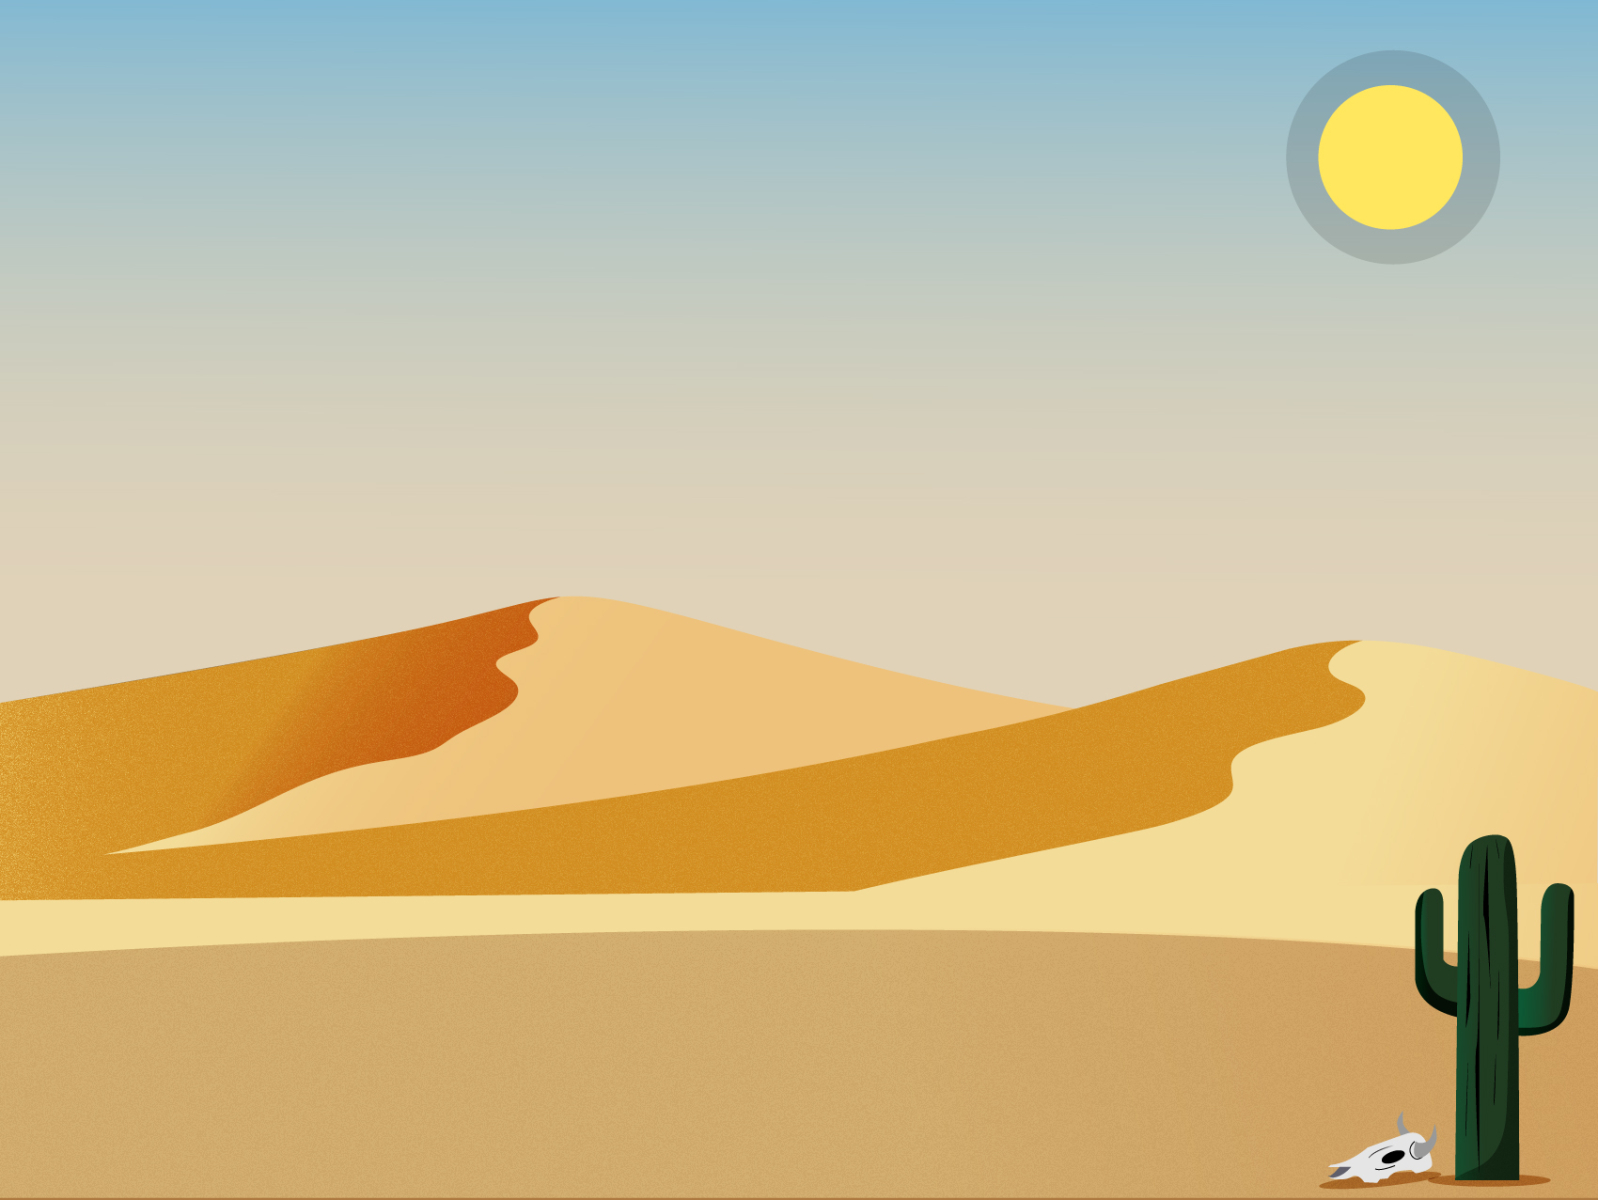 Desert by Dana on Dribbble